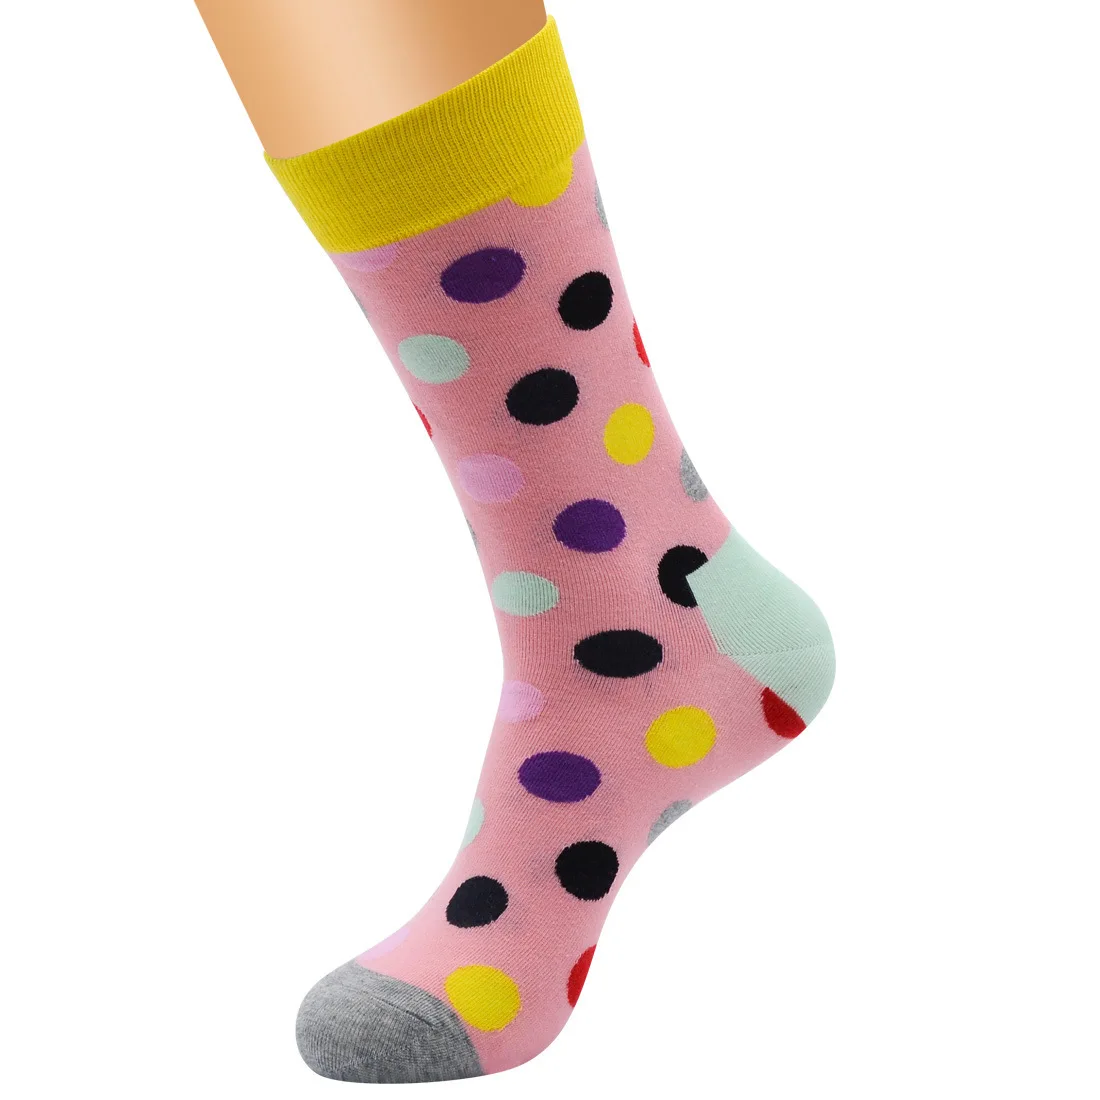 PEONFLY Новое поступление счастливые мужские носки красочные Dot дизайн чесаные хлопковые носки повседневные носки забавный подарок счастье - Цвет: 24 Pink